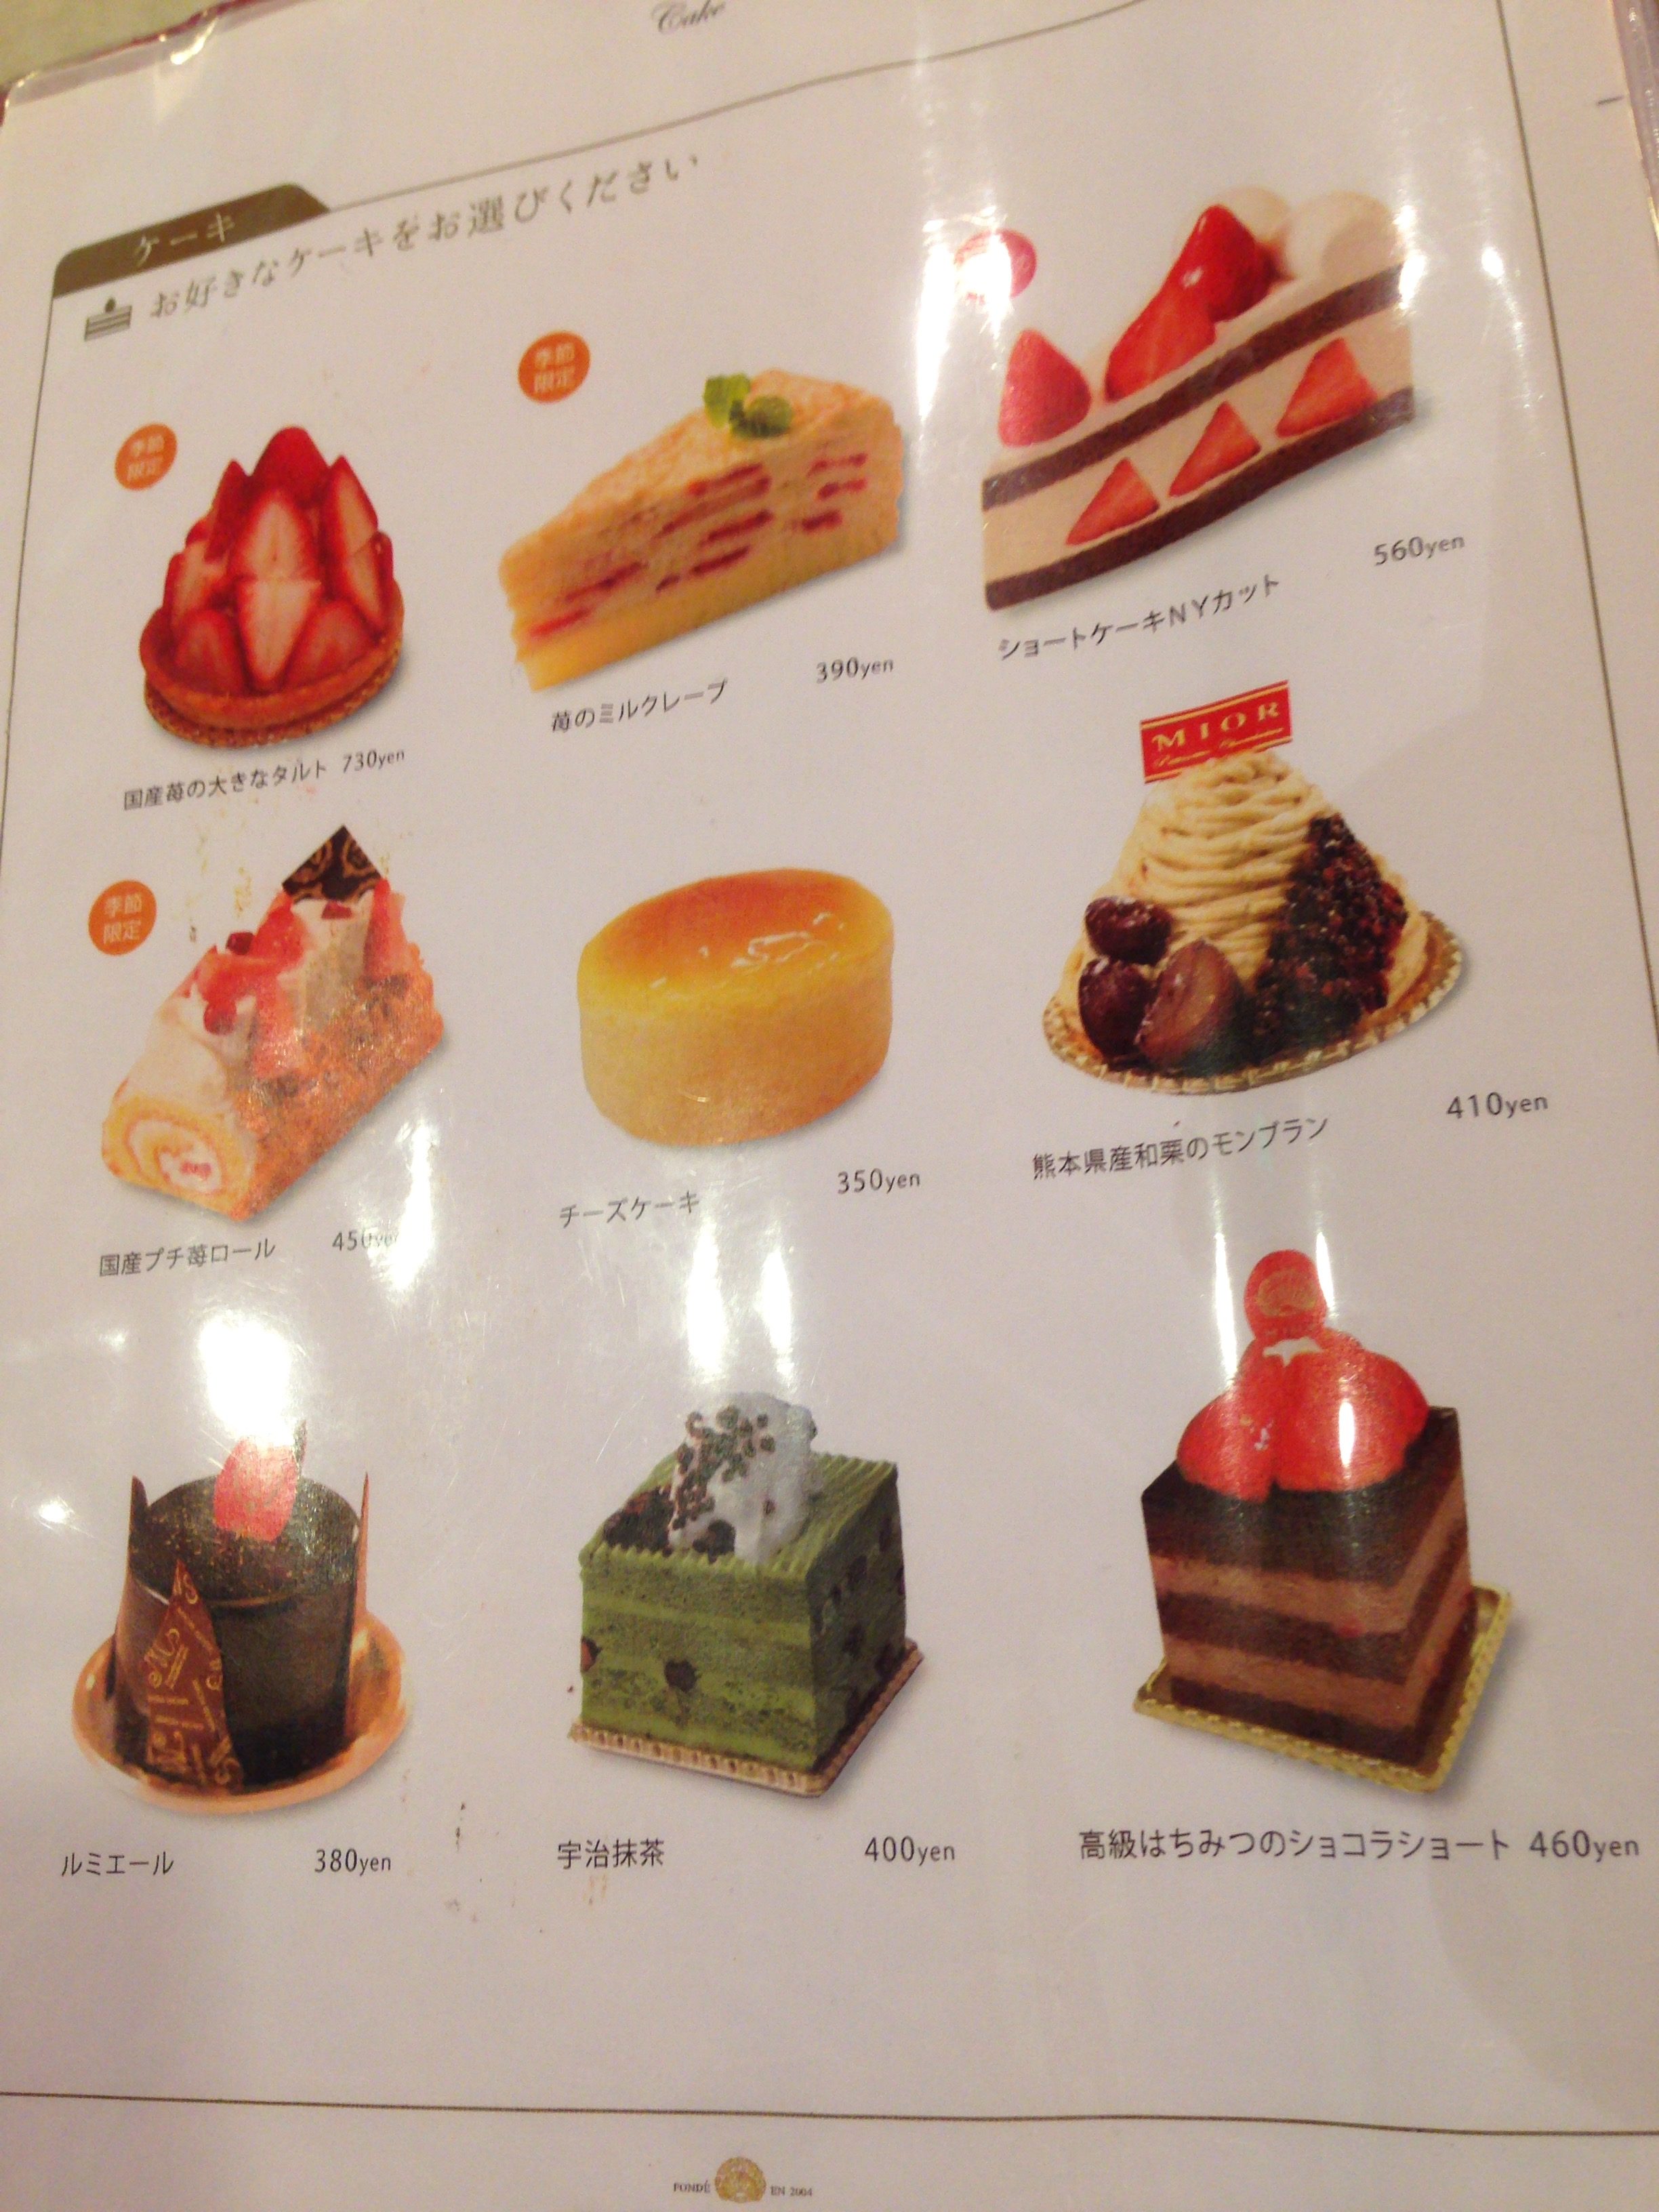 映えパフェ インパクト絶大 ショートケーキを丸ごと乗せてしまったパフェは梅田にあった ベッシーログ